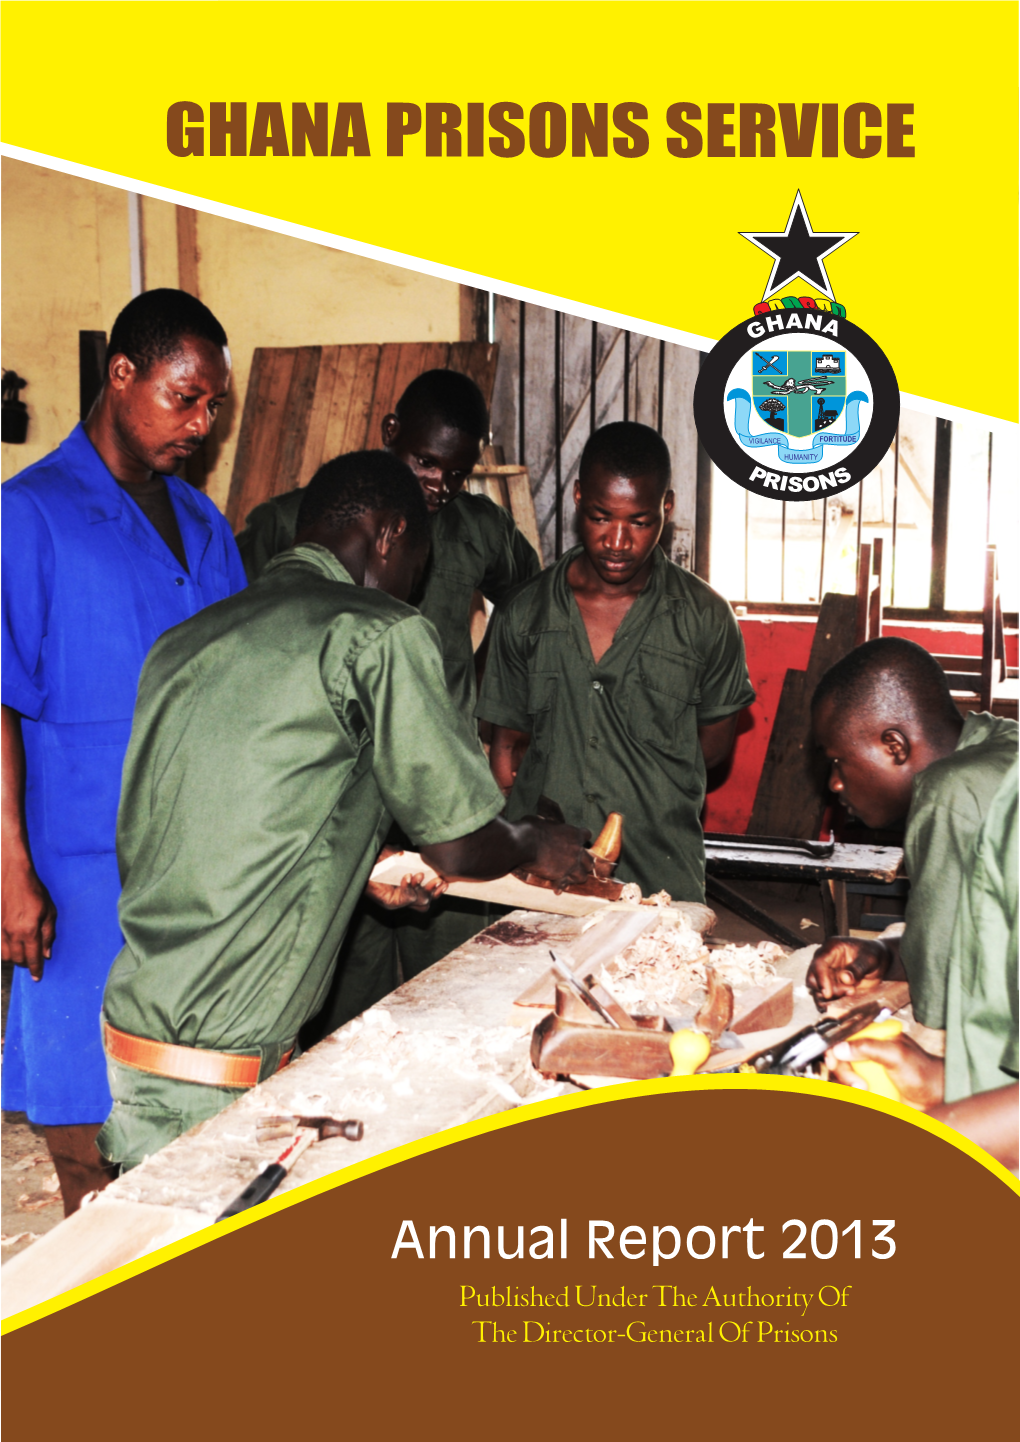 2013 Annual Report... Read More